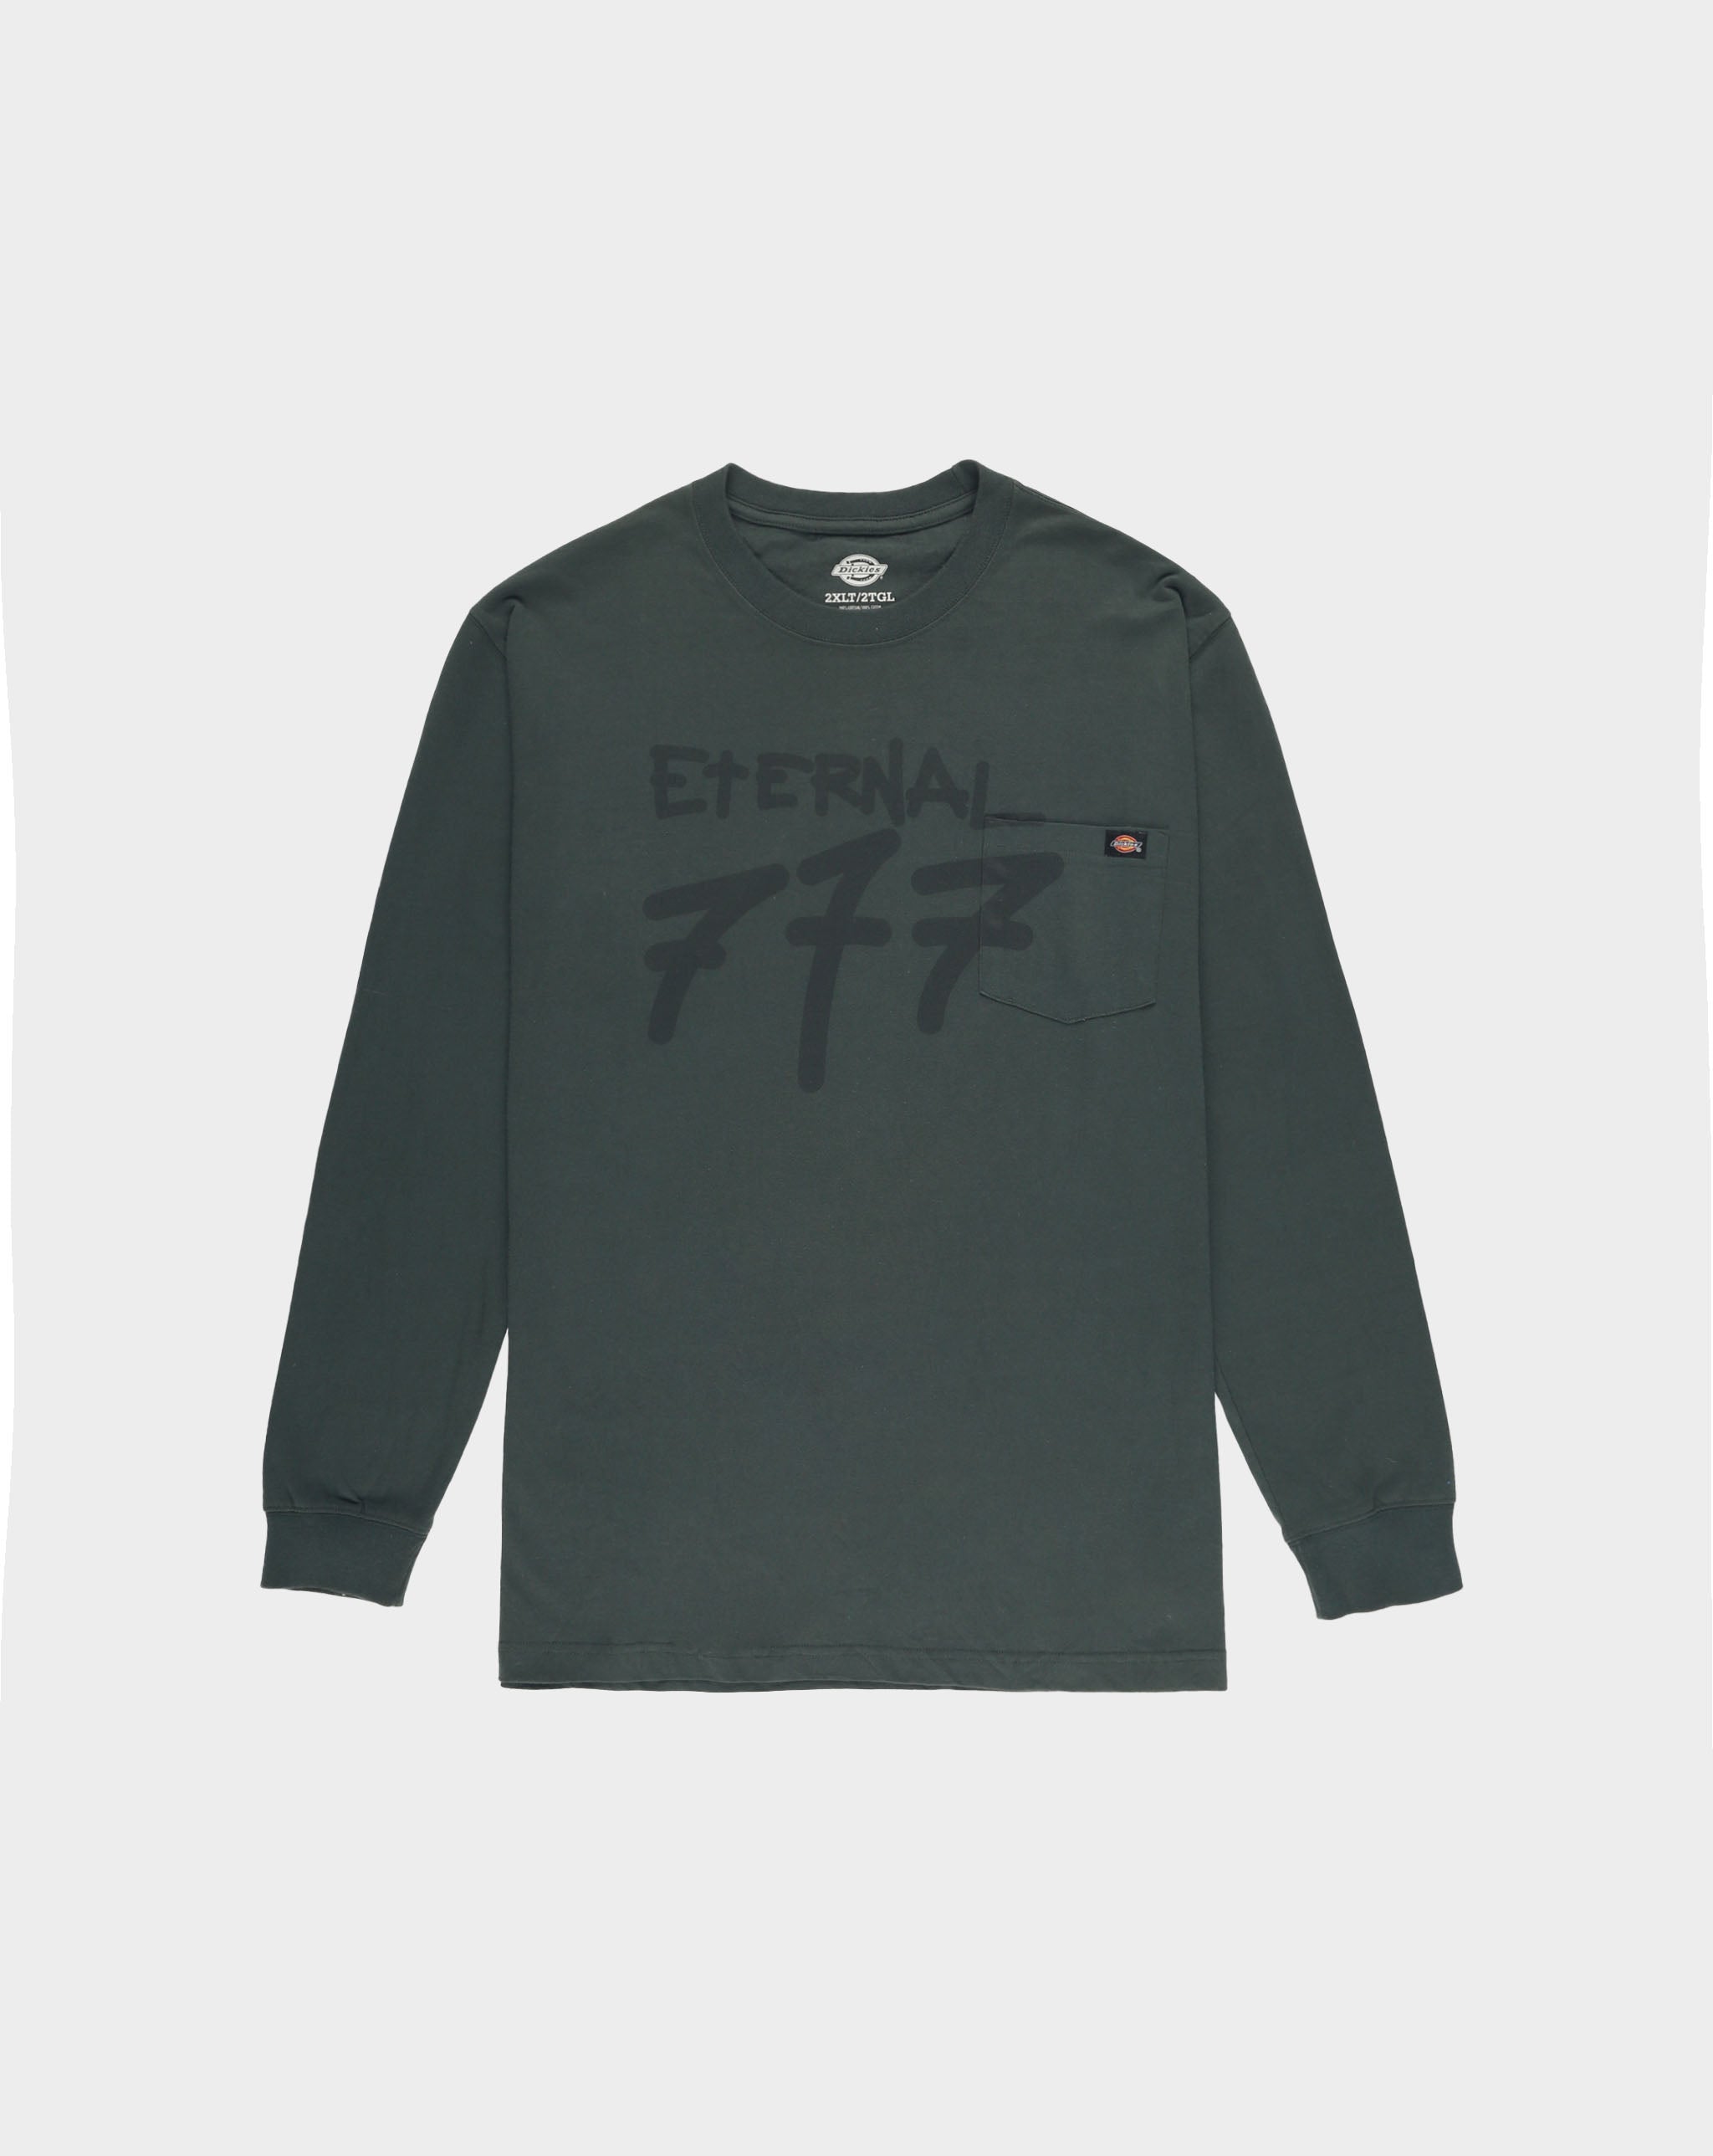 Contrast High CHxX Vintage "Eternal 777" Long Sleeve T-Shirt  - Cheap Urlfreeze Jordan outlet